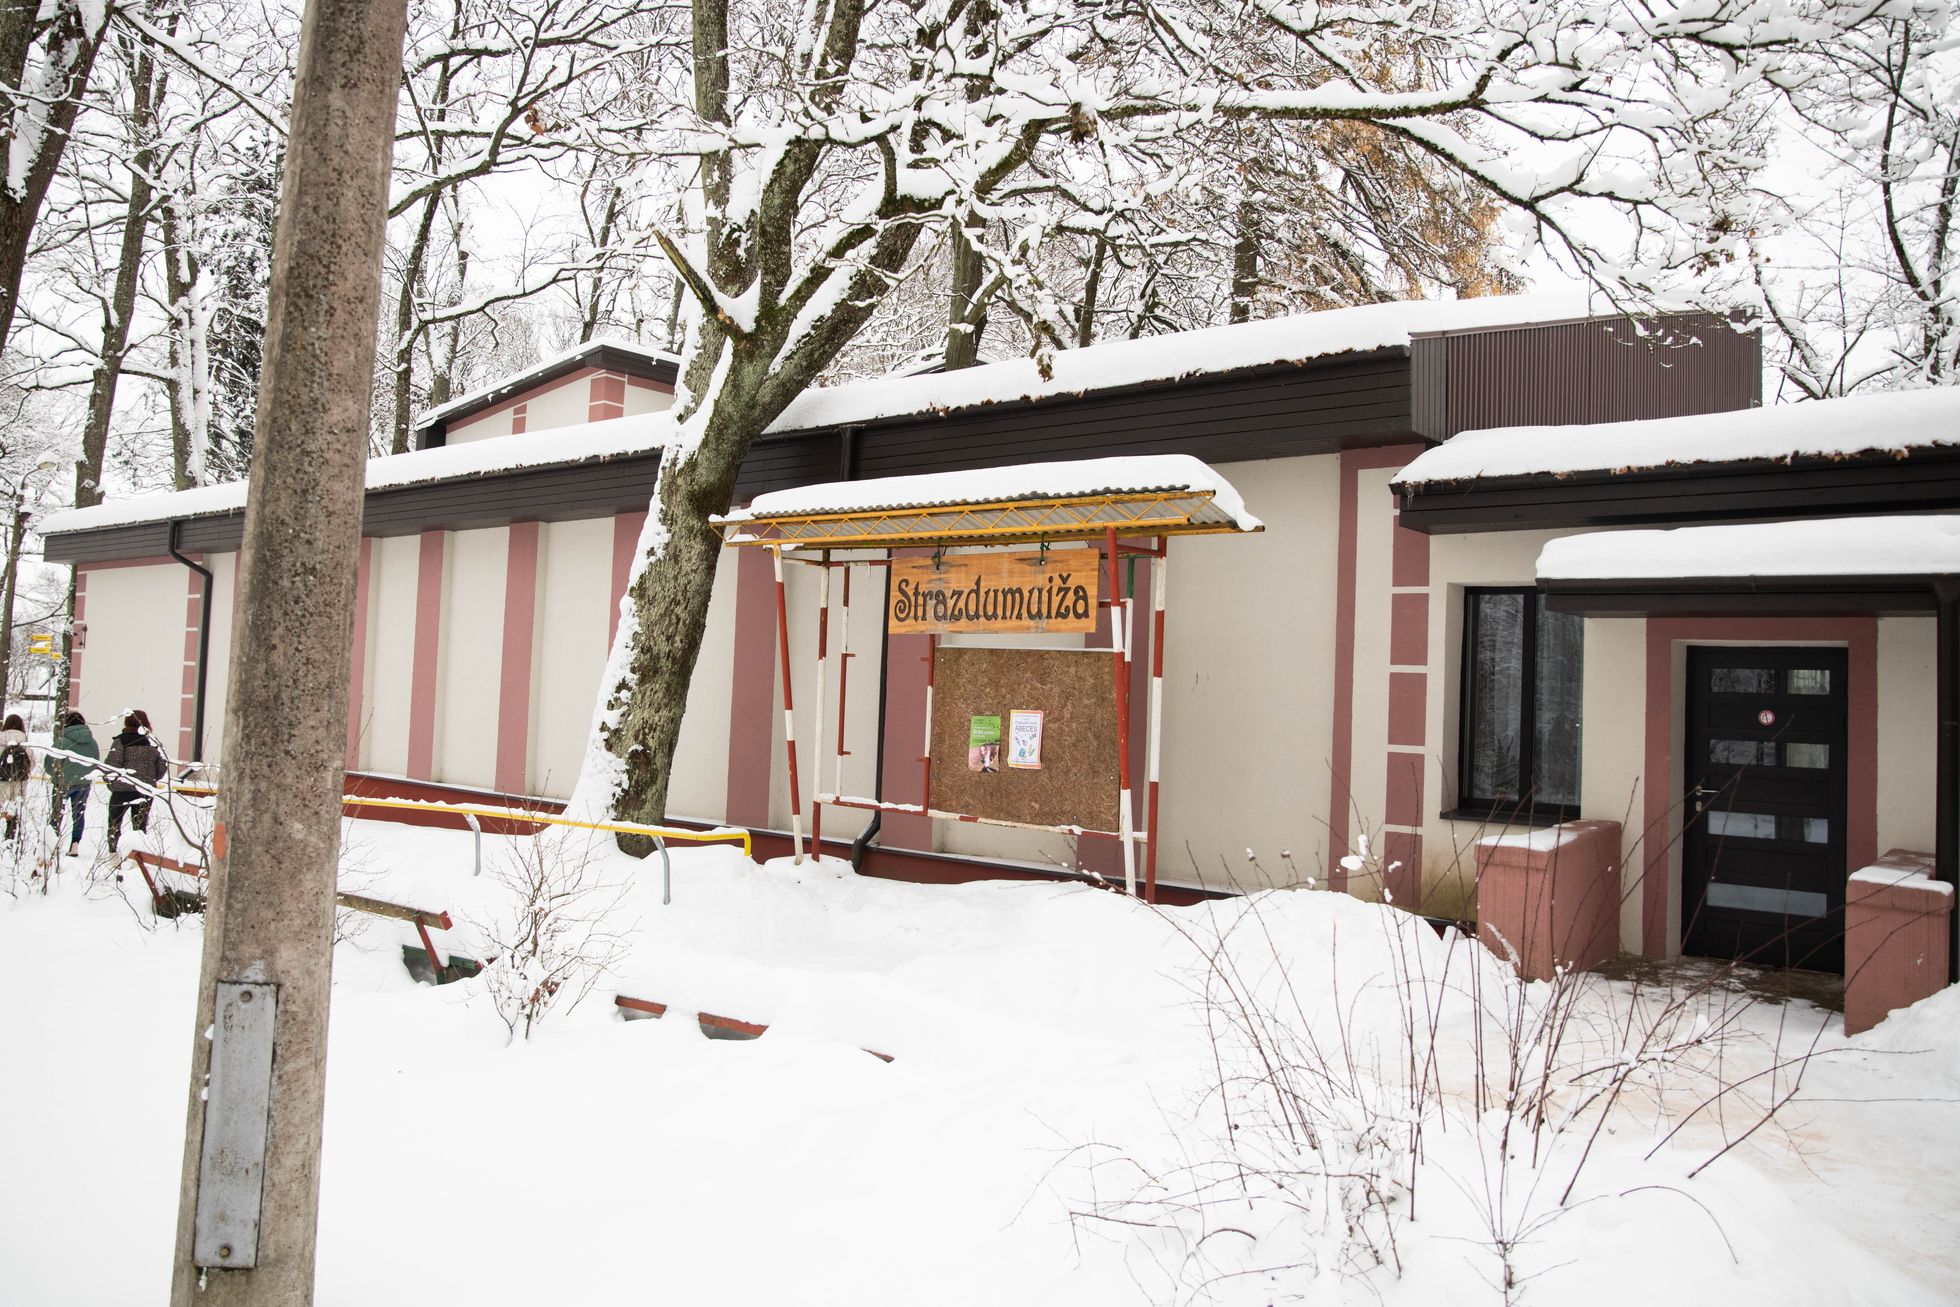 Клуб "Страздумуйжа" - главный центр культурной жизни Риги для людей с нарушениями зрения